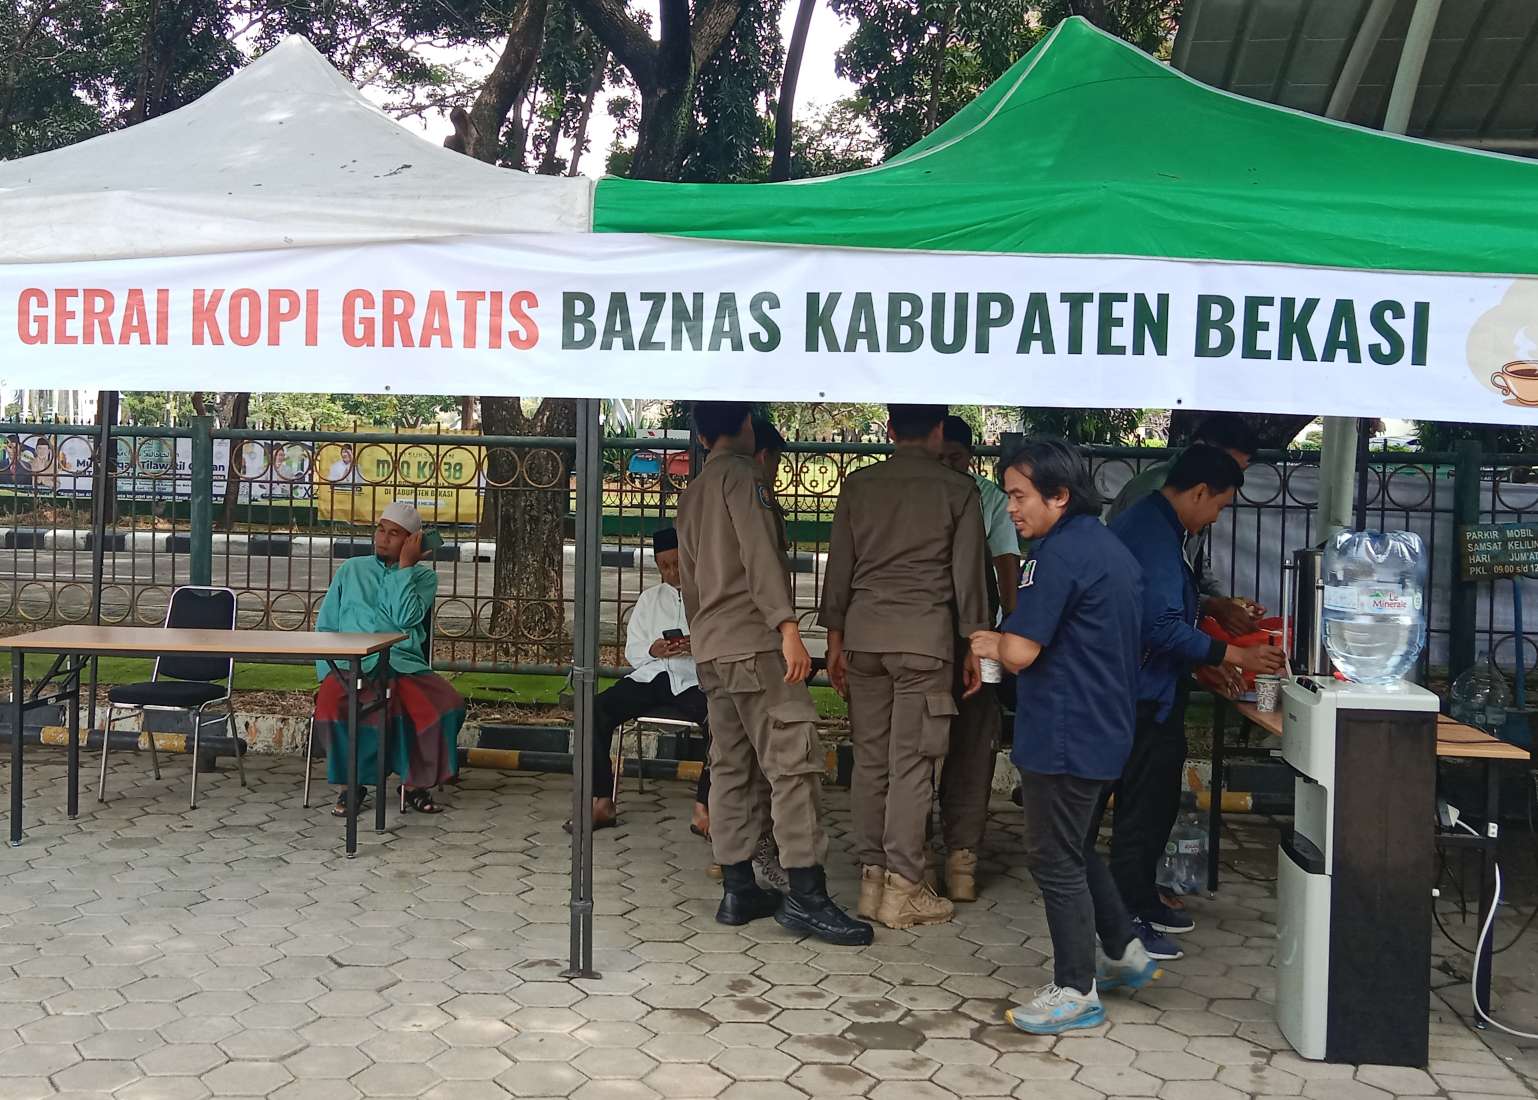 Baznas Kabupaten Bekasi Buka Gerai Kopi Gratis di Arena MTQ ke-38 Jabar